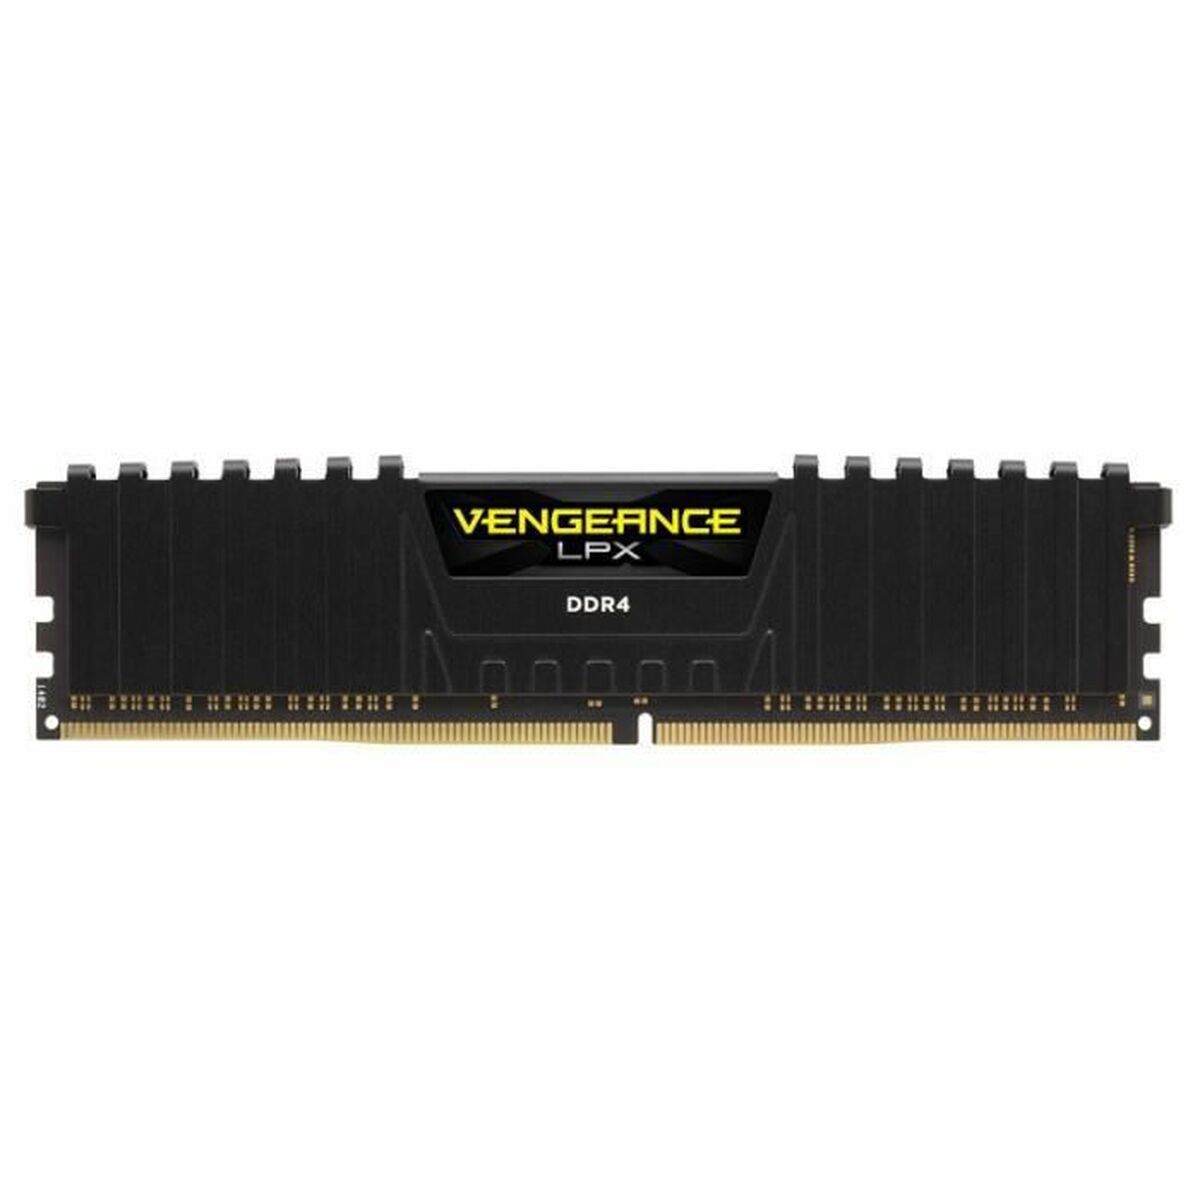 Memoria RAM Corsair CMK16GX4M2A2400C14DD DDR4 16 GB